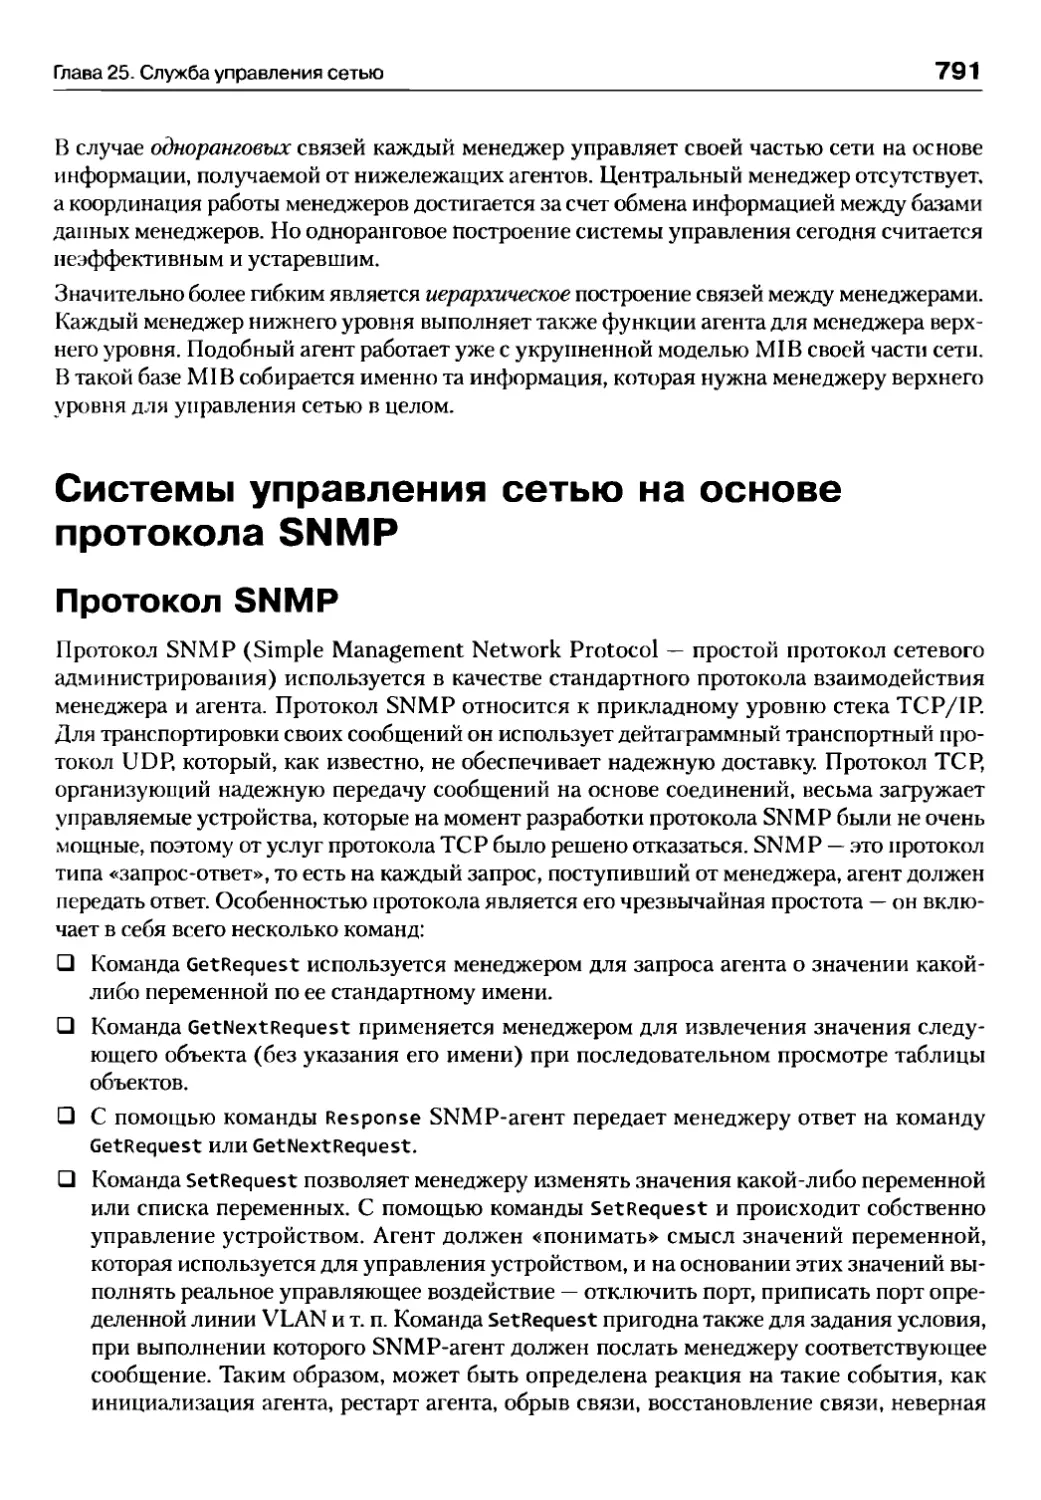 Системы управления сетью на основе протокола SNMP